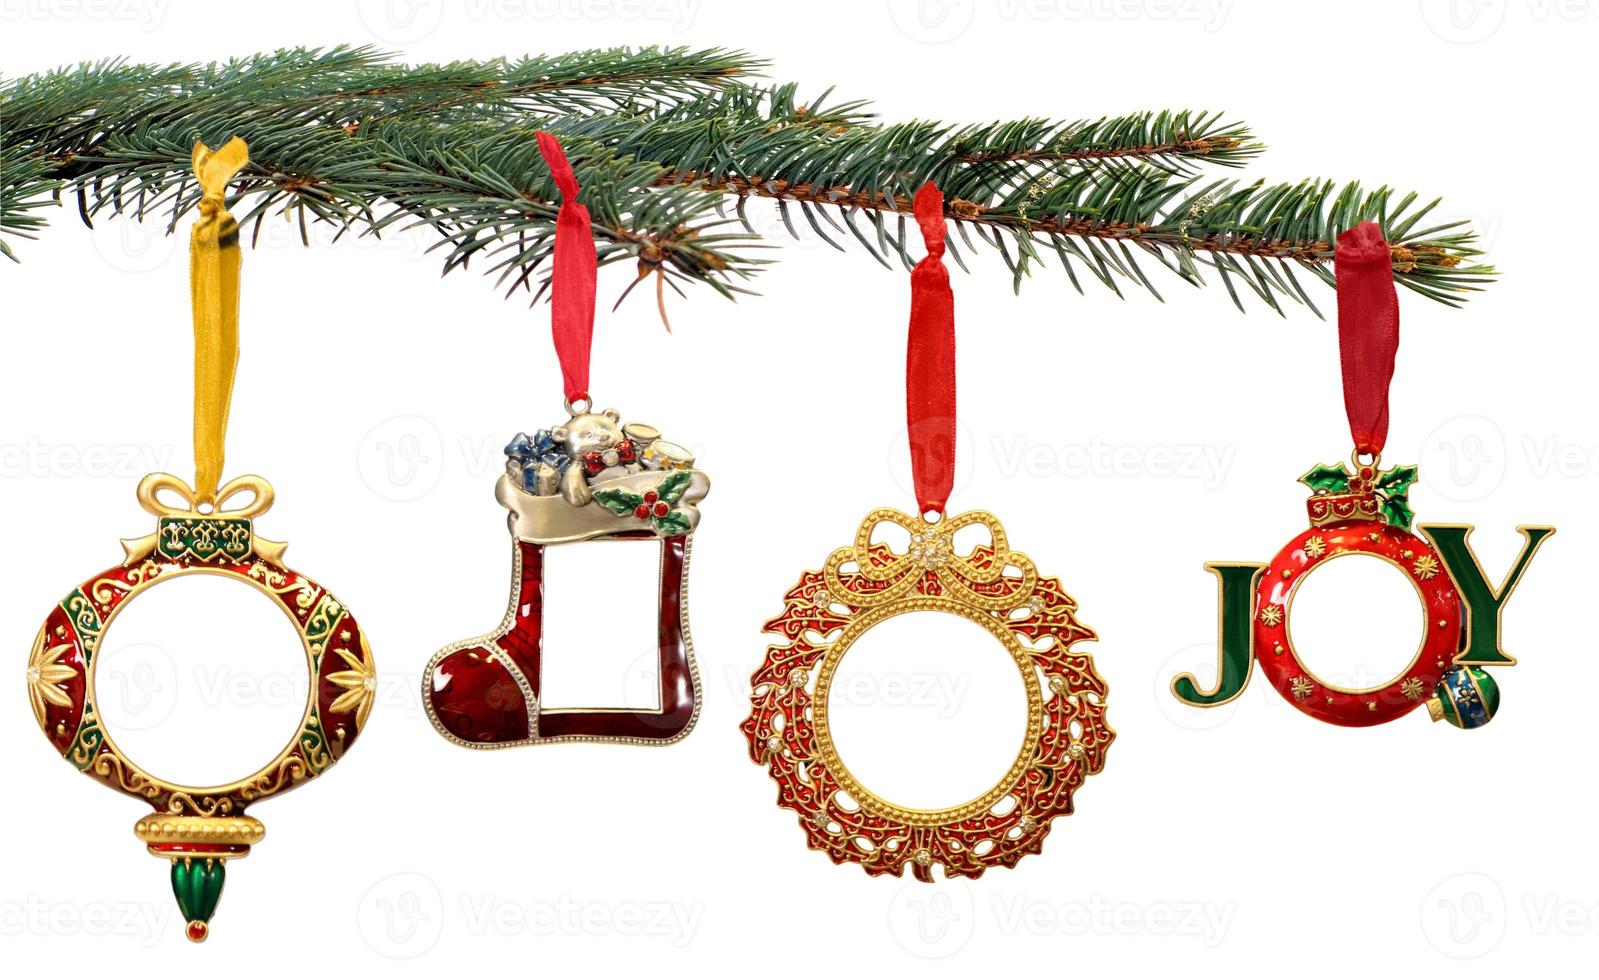 enfeites de natal pintados à mão pendurados em um galho de árvore foto